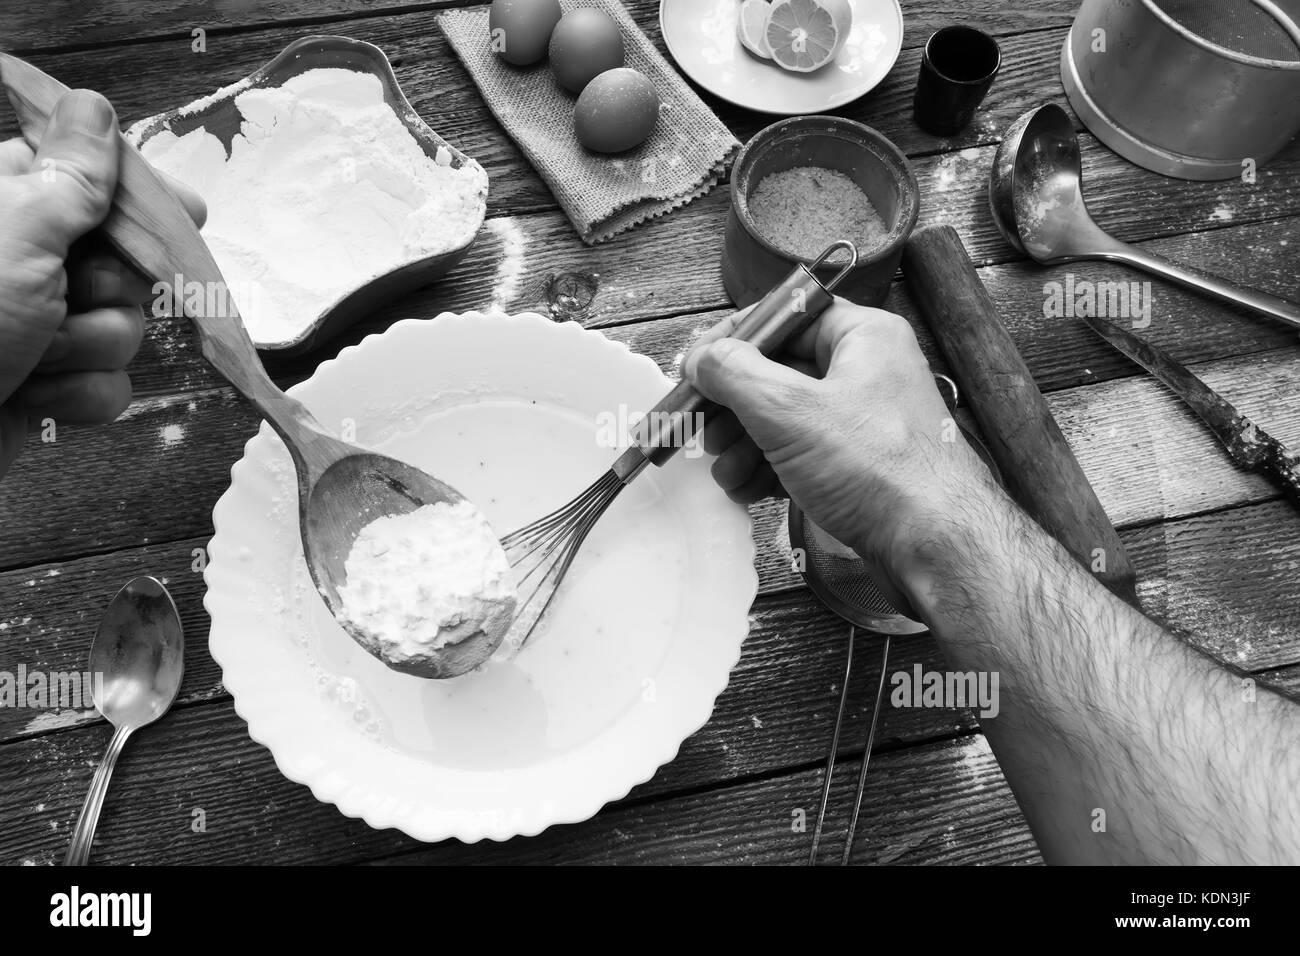 L'homme pétrir la pâte avec un fouet. La farine de blé, oeufs, pâte, un  citron et des ustensiles de cuisine sur la table en bois. Préparation de la  pâte dans un cadre